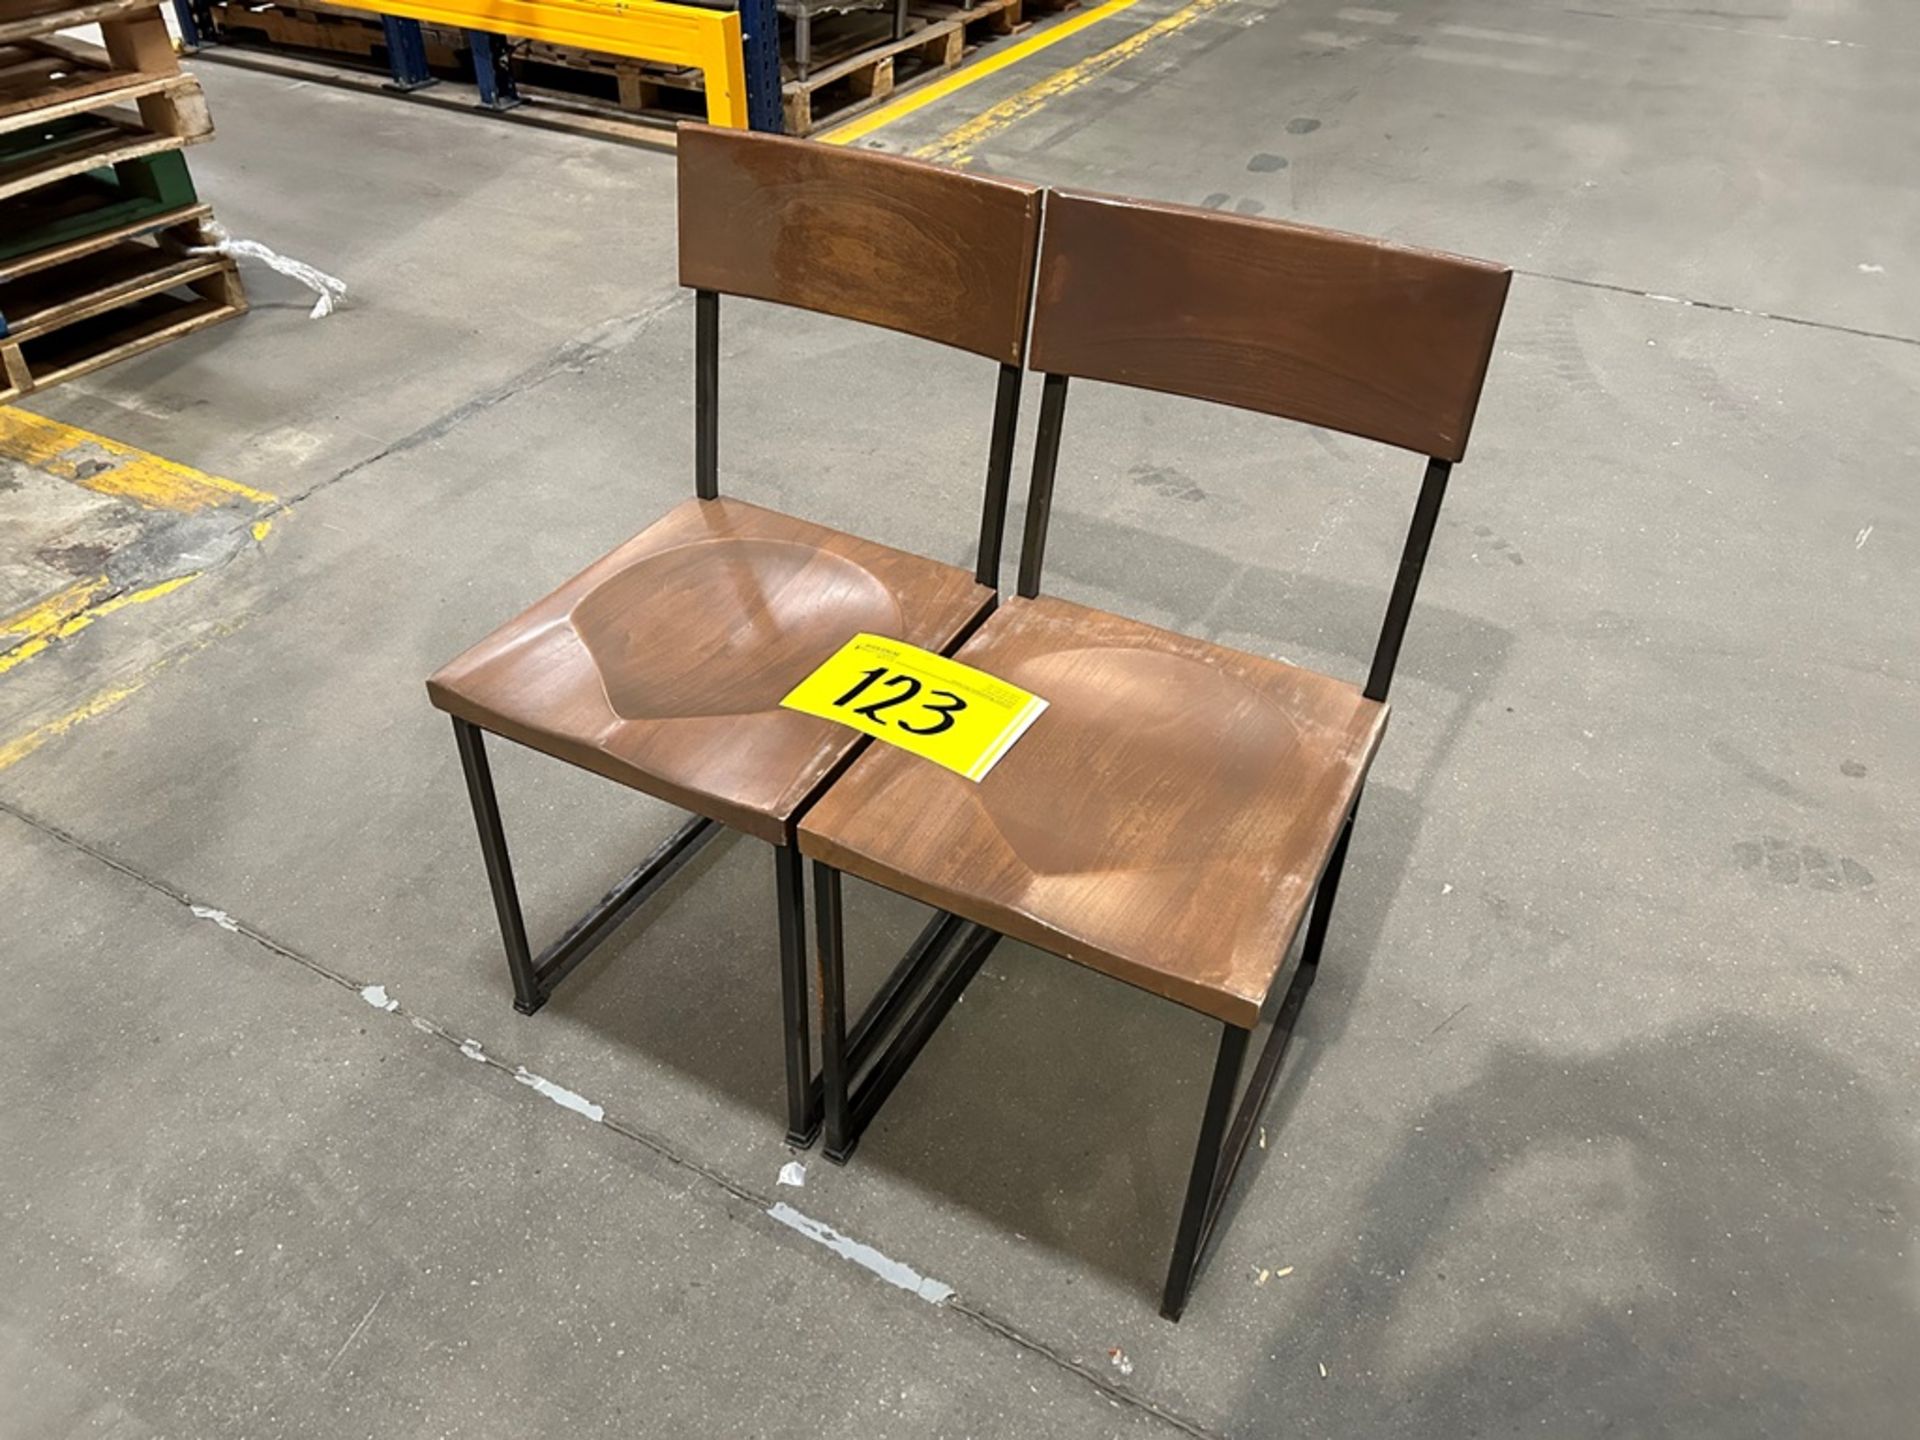 6 sillas en acero/madera color negro/café medidas 48 cm x 41 cm x 87 cm (Equipo usado) - Image 2 of 5